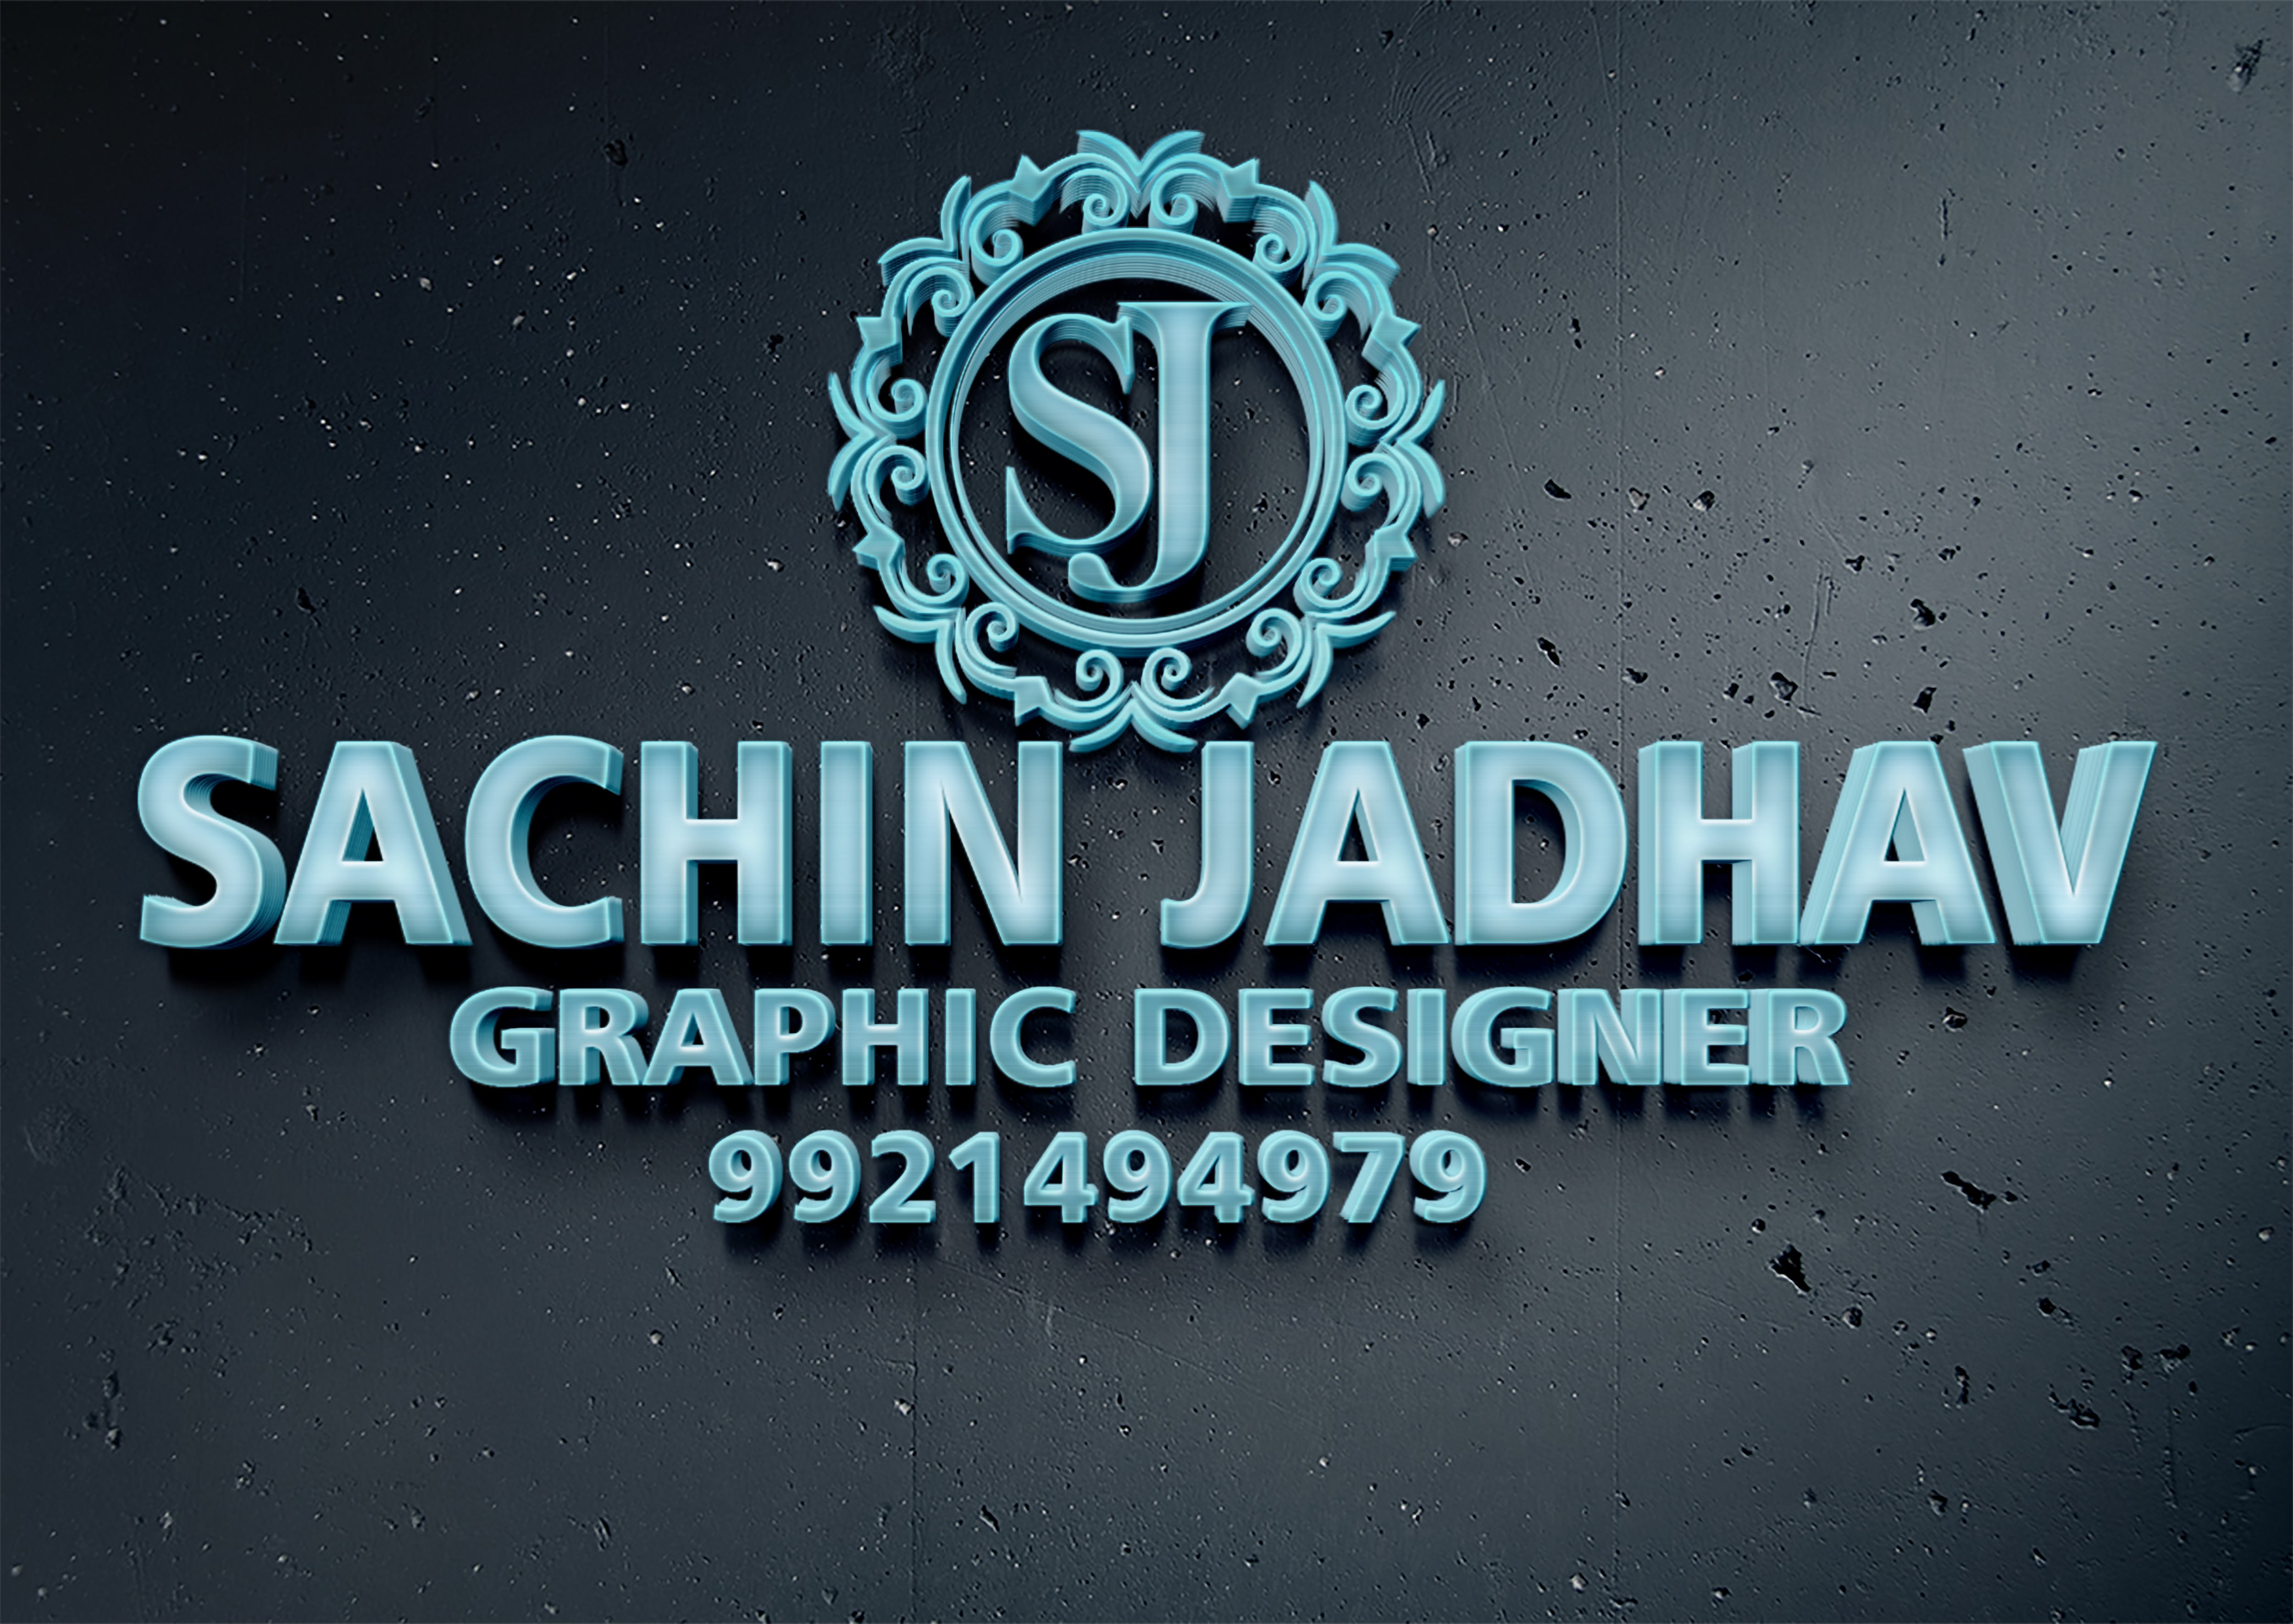 Sachin Jadhav Graphic Designer